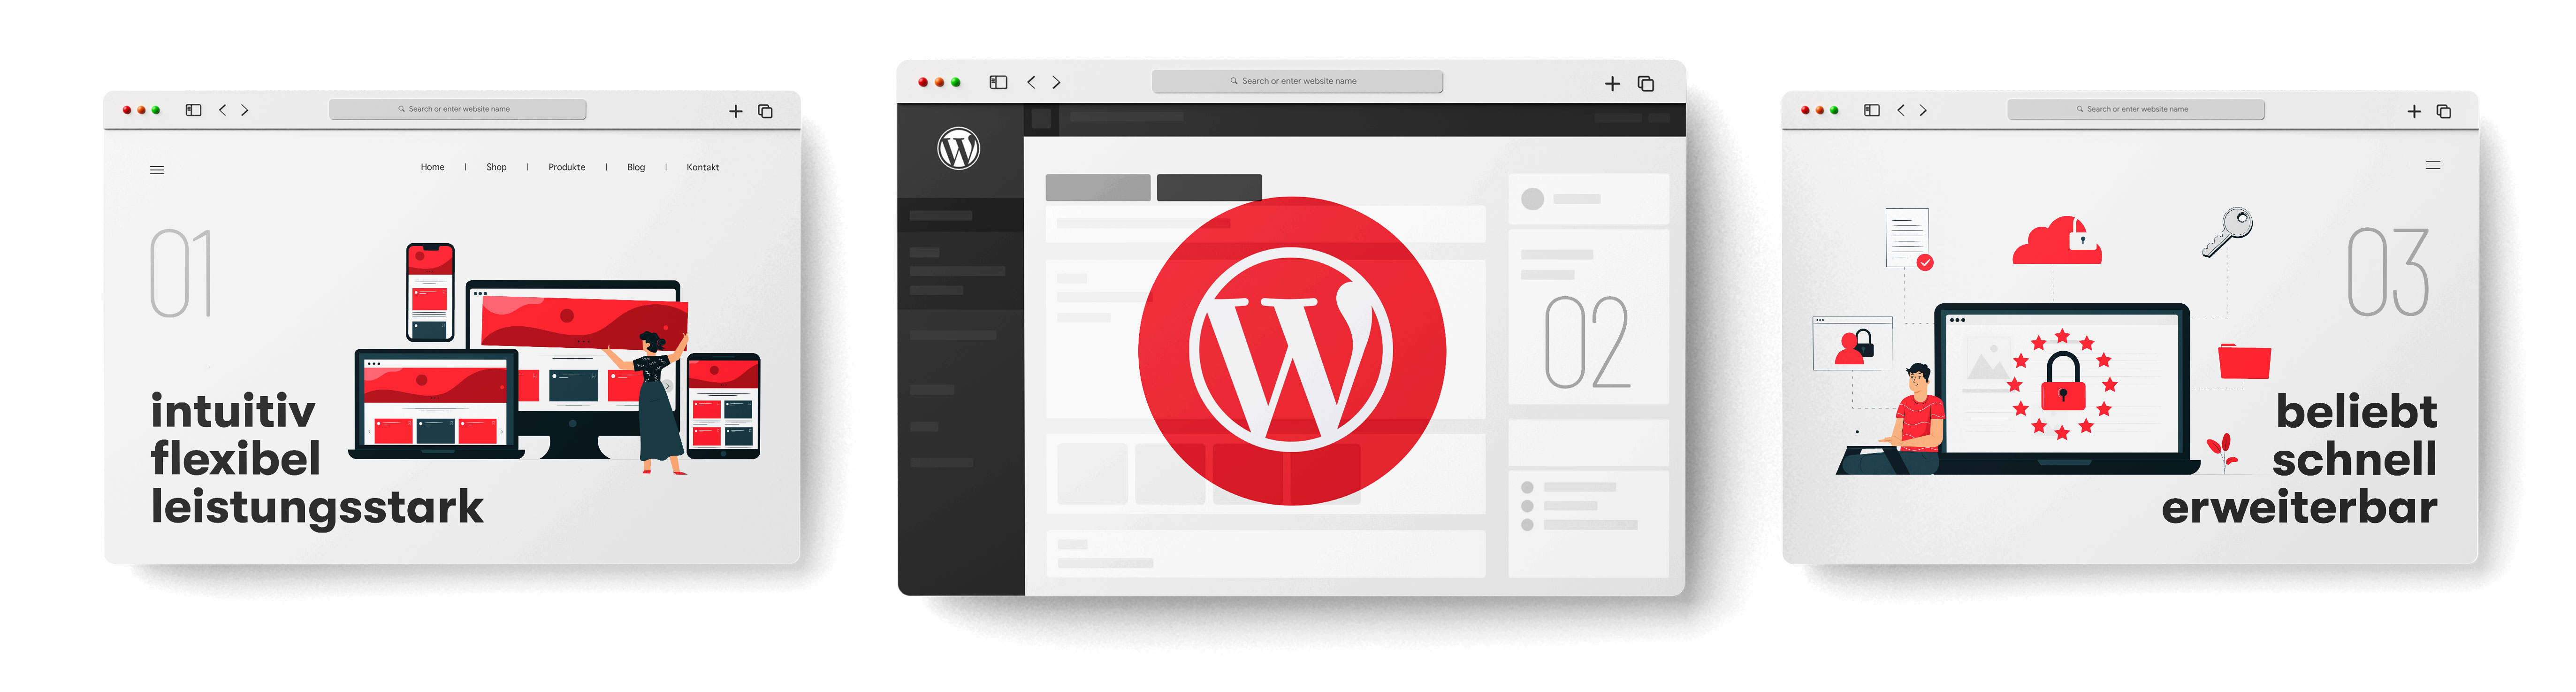 Screendesign Wordpress